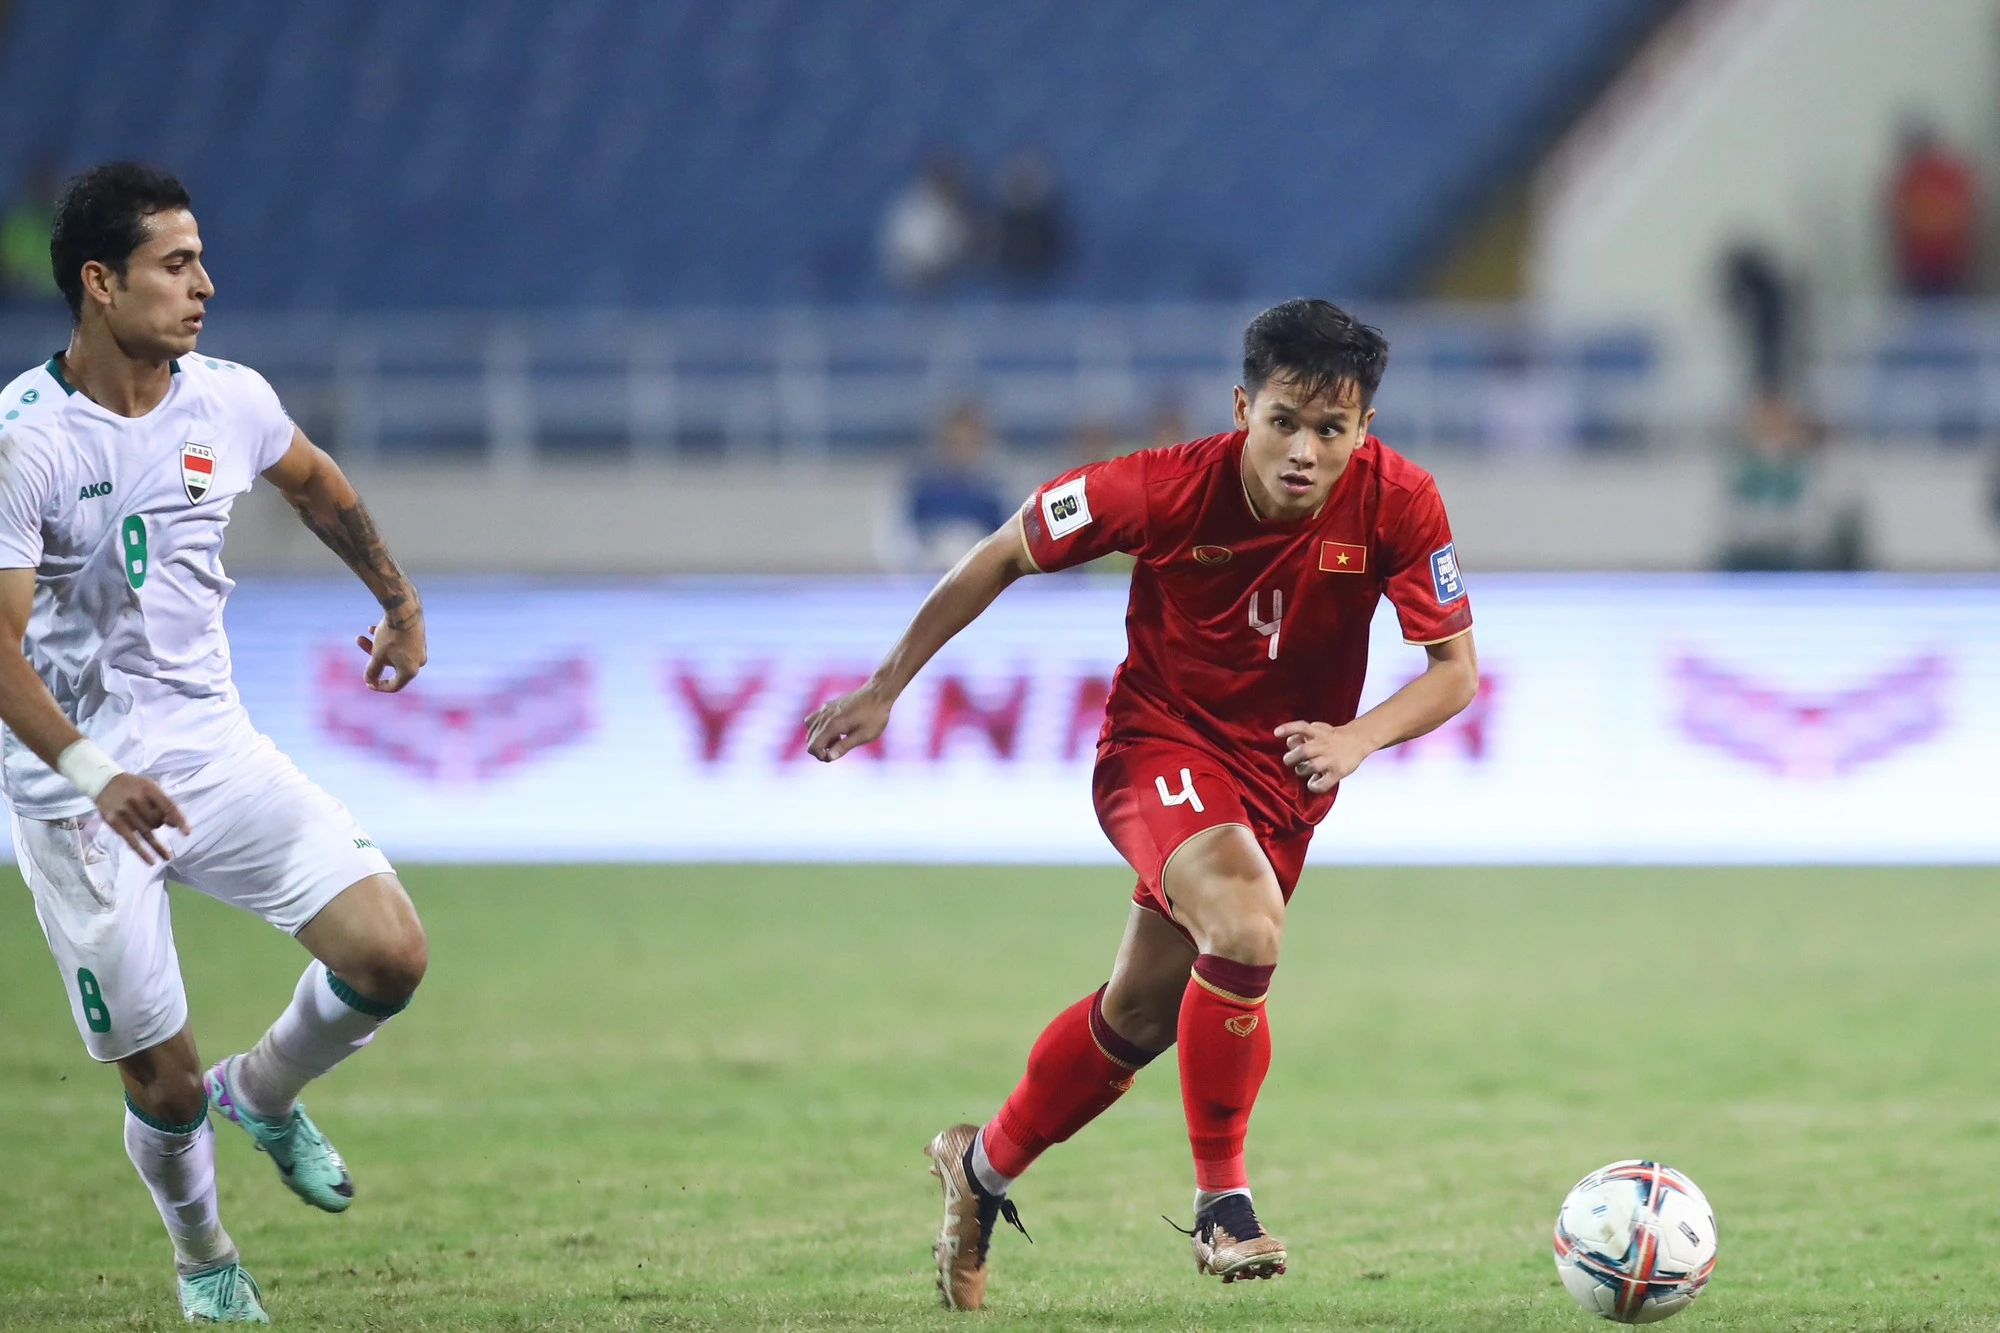 Võ Minh Trọng mổ vai thành công, hết lòng ủng hộ đội U.23 Việt Nam